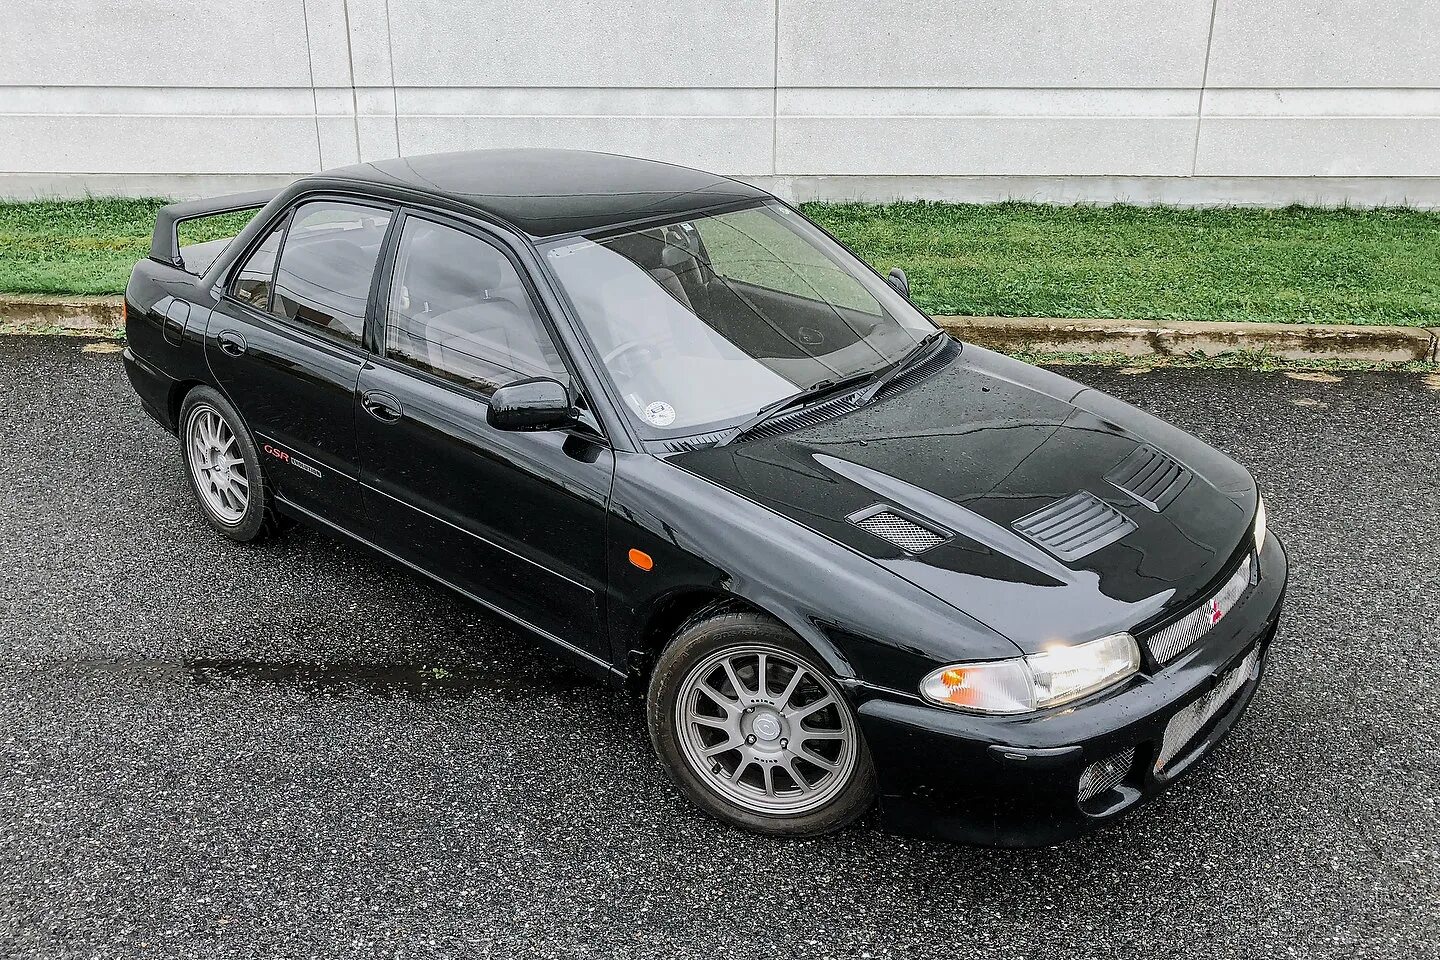 Mitsubishi 1993. Mitsubishi Lancer Evolution 1993. Lancer EVO 1993. Mitsubishi Lancer Evolution 1992. Митсубиси Лансер 1993.